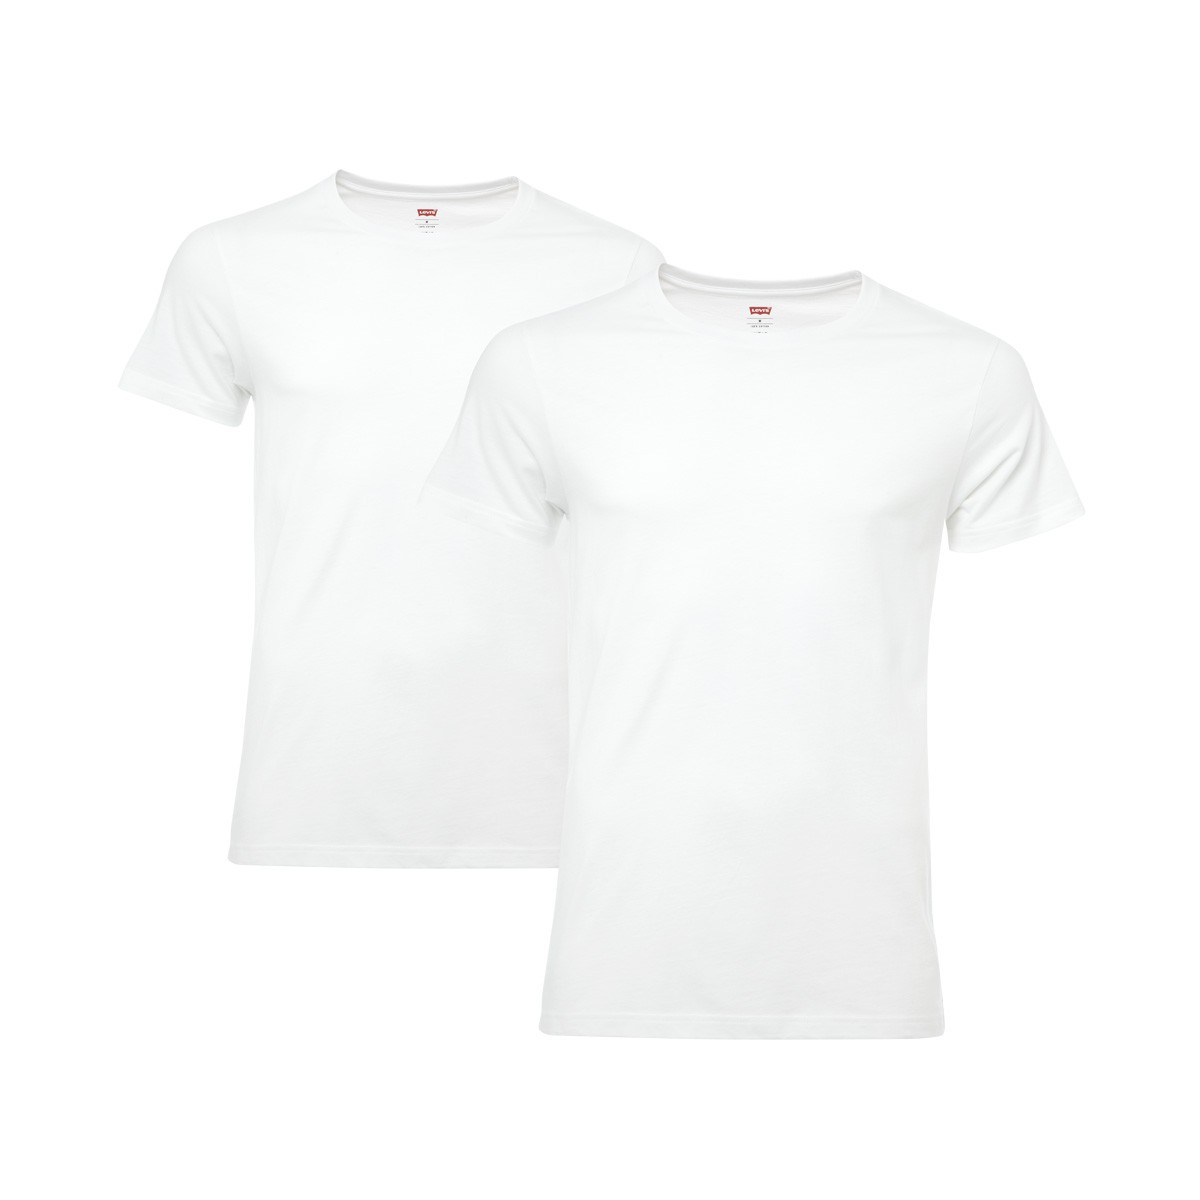 4 er Pack Levis Crew T-Shirt Men Herren Unterhemd Rundhals, Farbe:300 - white;Bekleidungsgröße:S